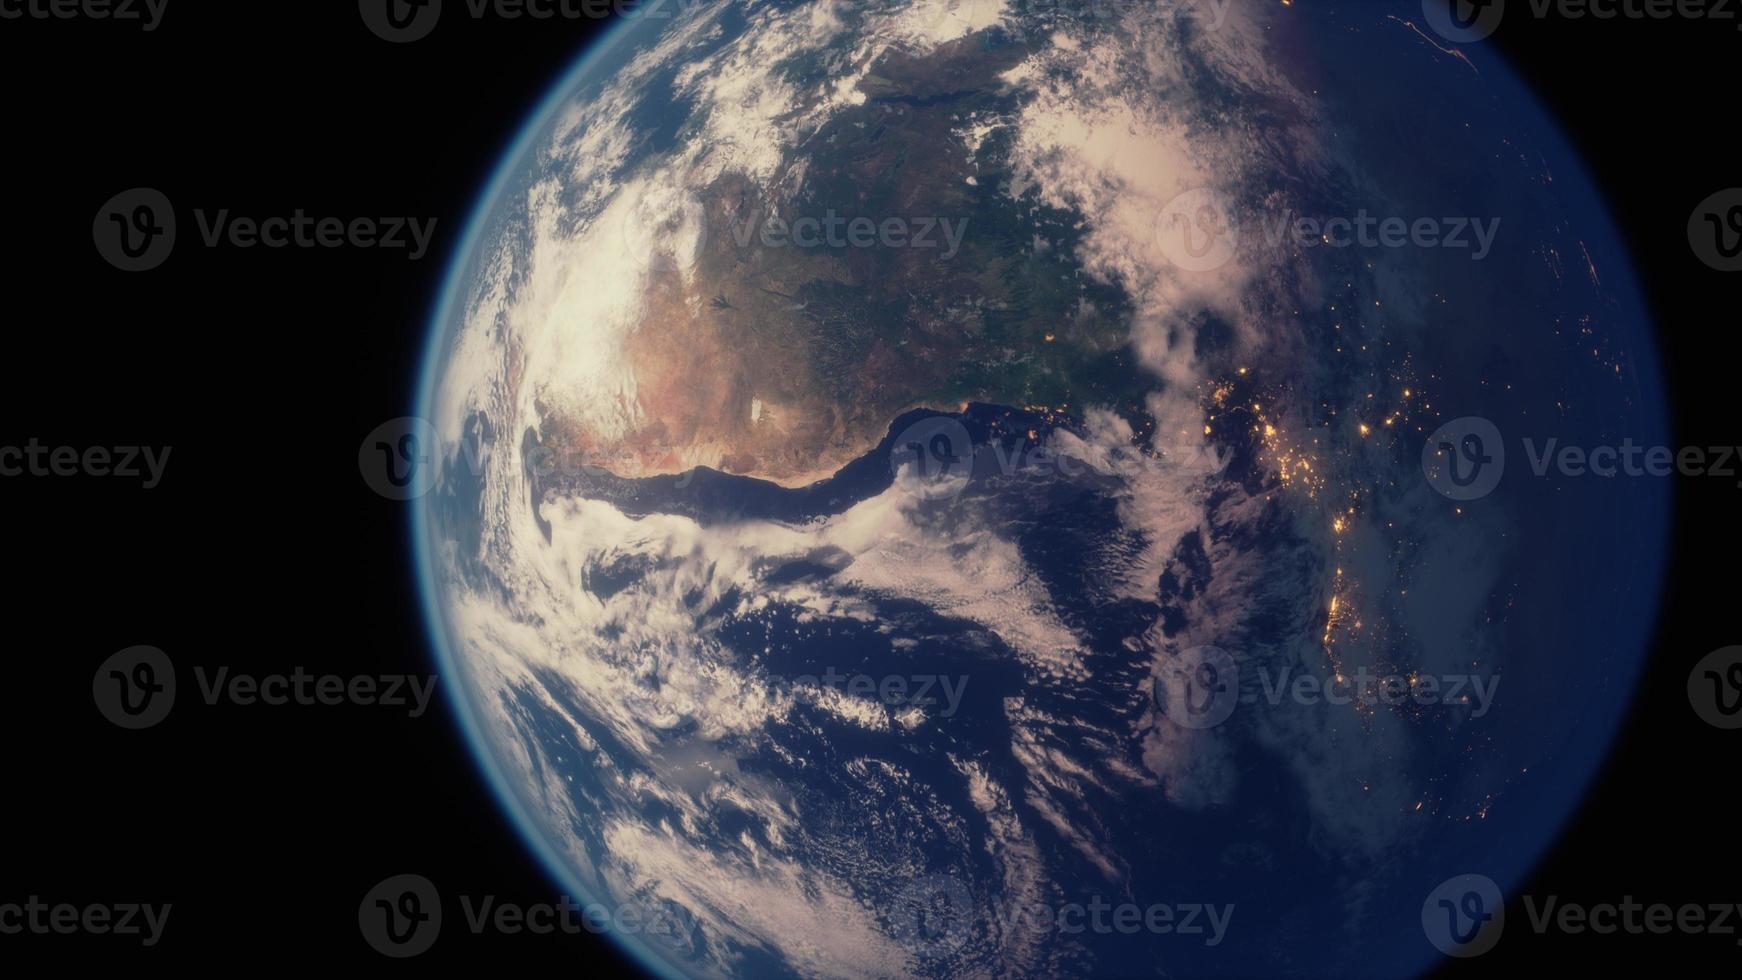 bol van de nachtelijke planeet aarde in de ruimte foto